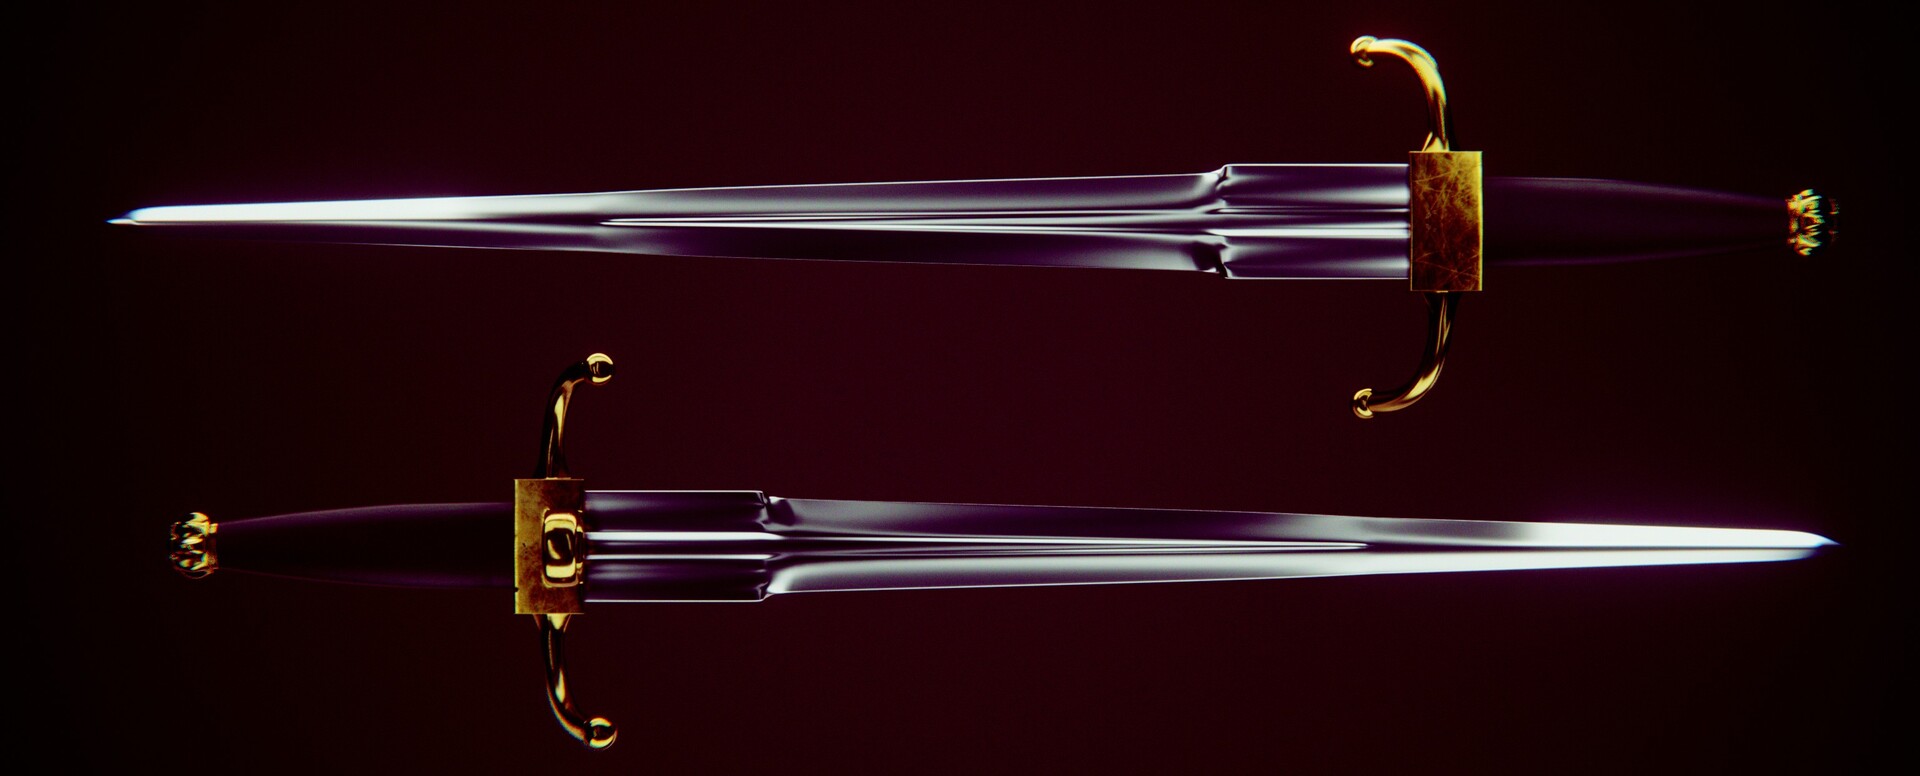 Noureddine ait hellal sword